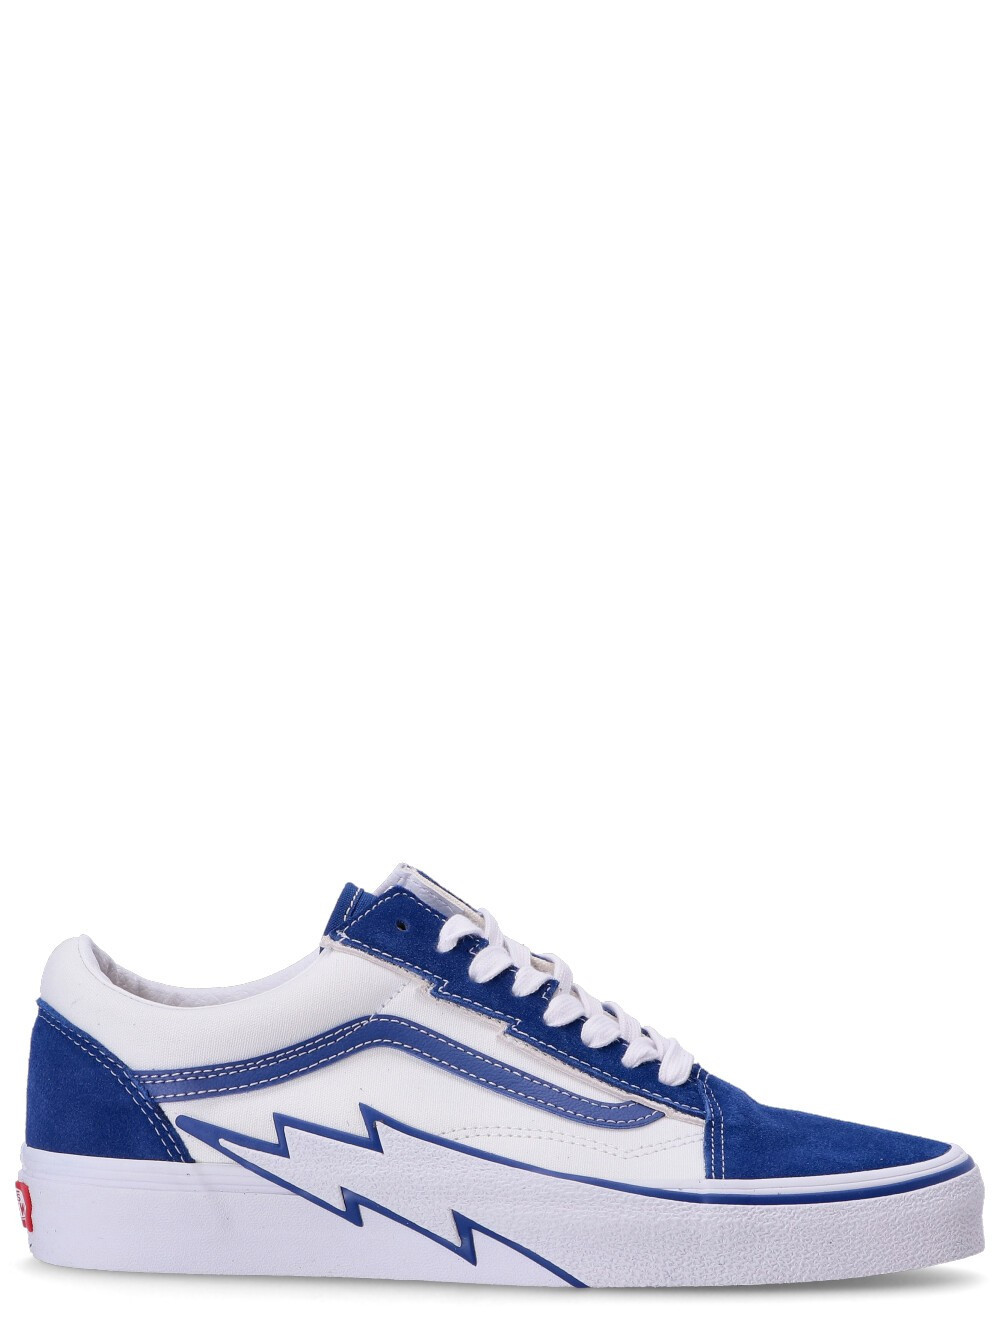 VANS - Sneaker Azul Hombre - Guanxe Atlantic Marketplace